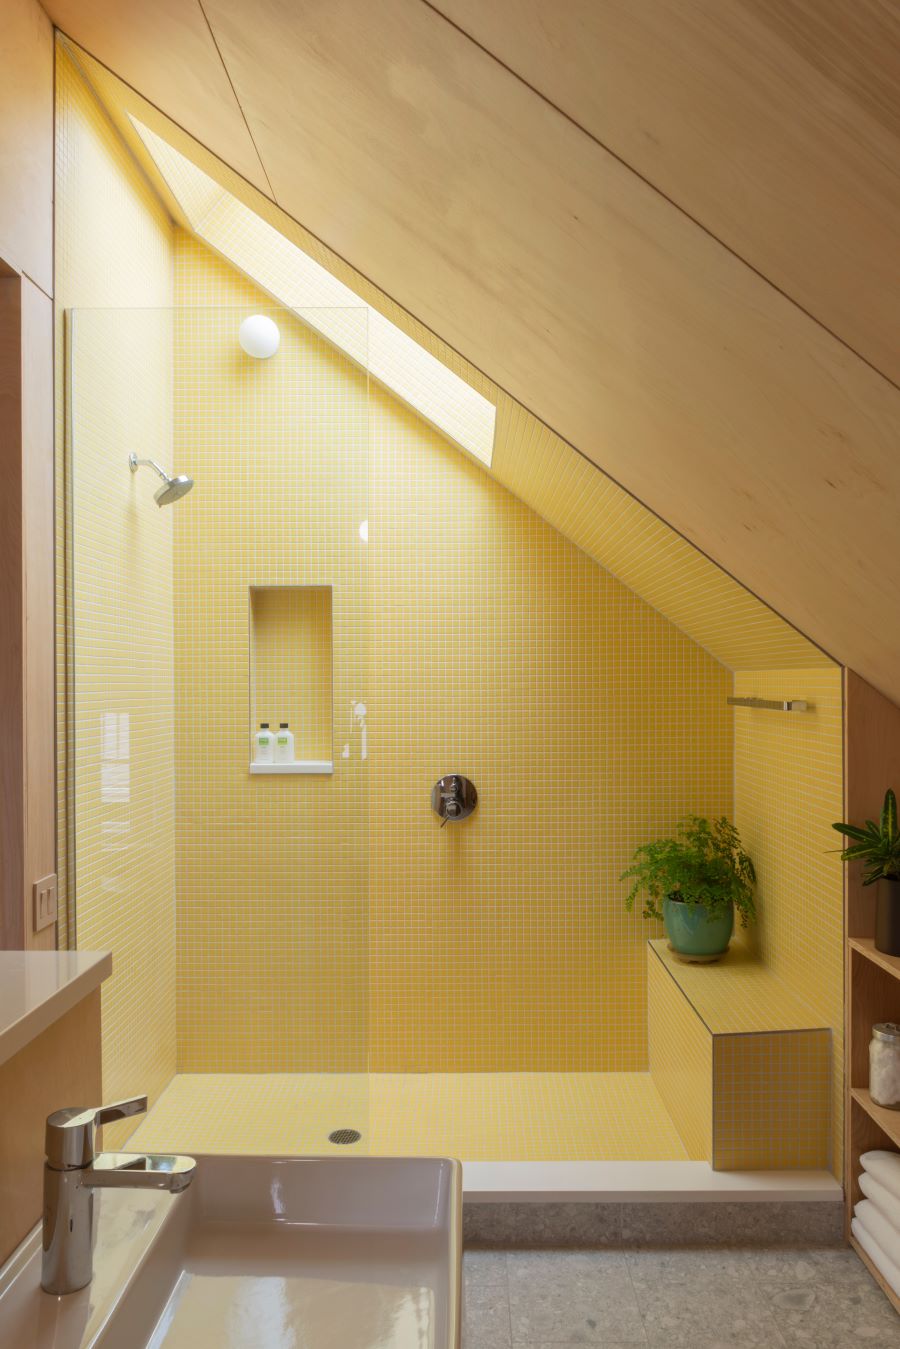 Podkrovná kúpeľňa so žltým obkladom v sprchovacom kúte.